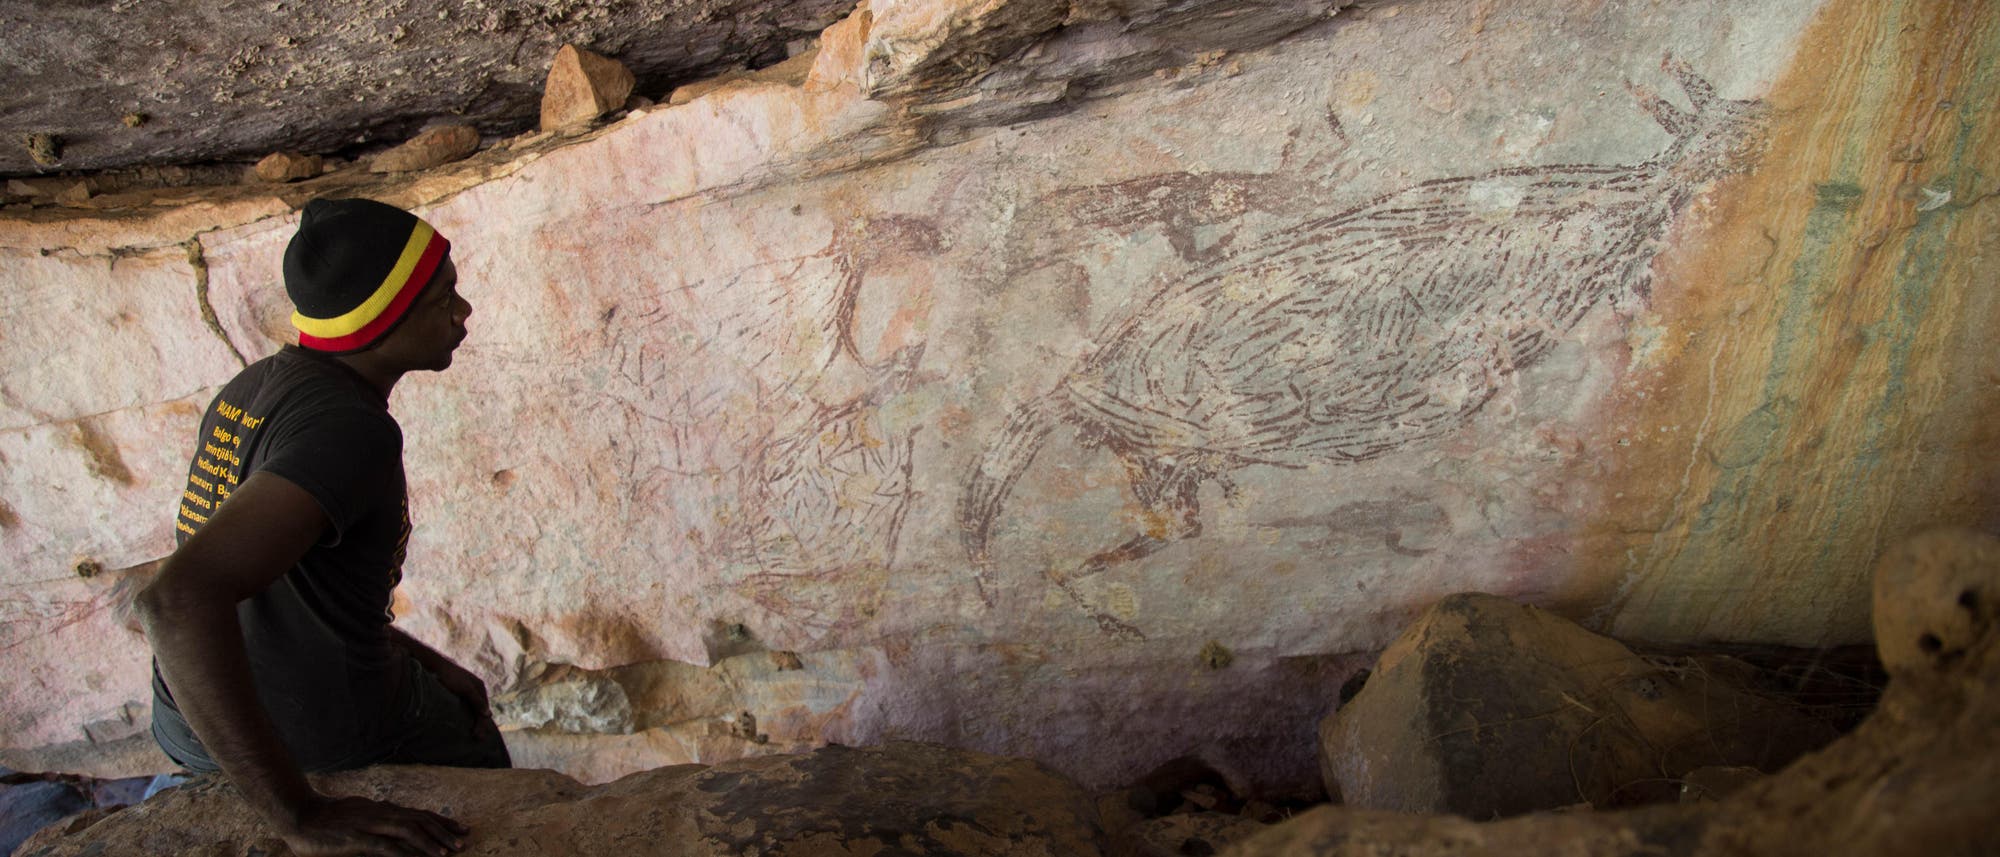 Uralte Kängurumalerei (rechts im Bild) im Norden des australischen Bundesstaats Westaustralien. C-14-Daten ergaben, dass das Bild zwischen 13300 und 12700 Jahren alt ist.